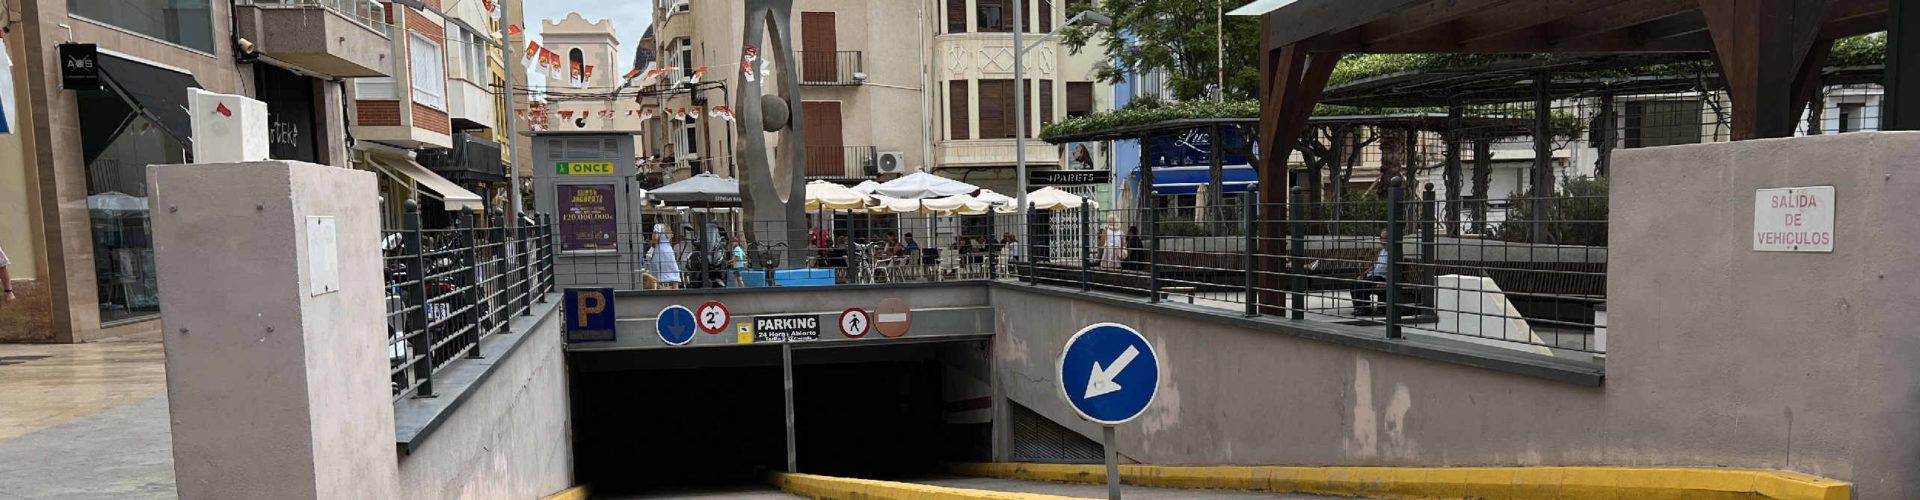 El dilluns 4 de juliol Vinaròs reprendrà el servei de la zona blava i aparcaments soterrats